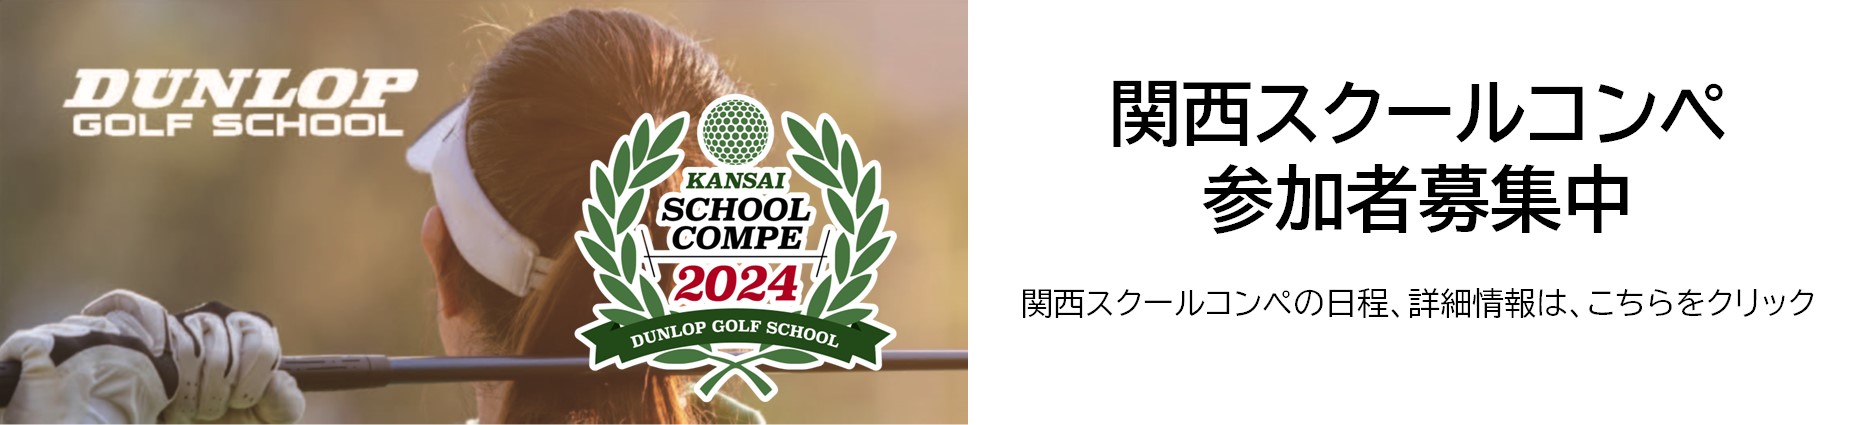 関西ゴルフスクールコンペ